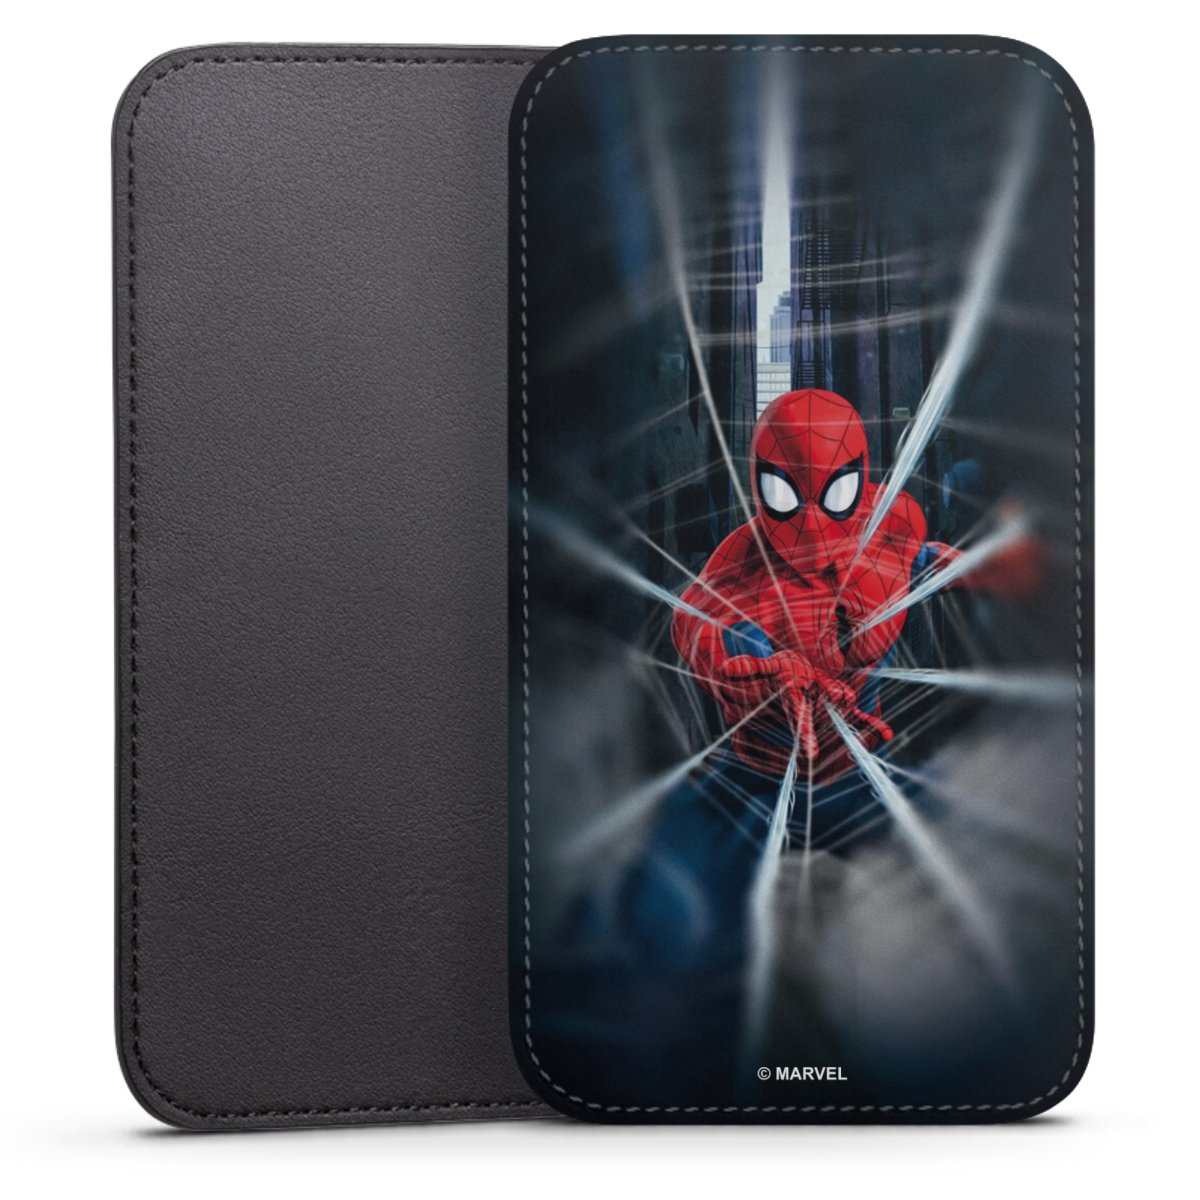 wetgeving Ten einde raad rand Spider-Man Webs In Action voor Insteekhoesje (zwart) voor Huawei Ascend Y300  van DeinDesign